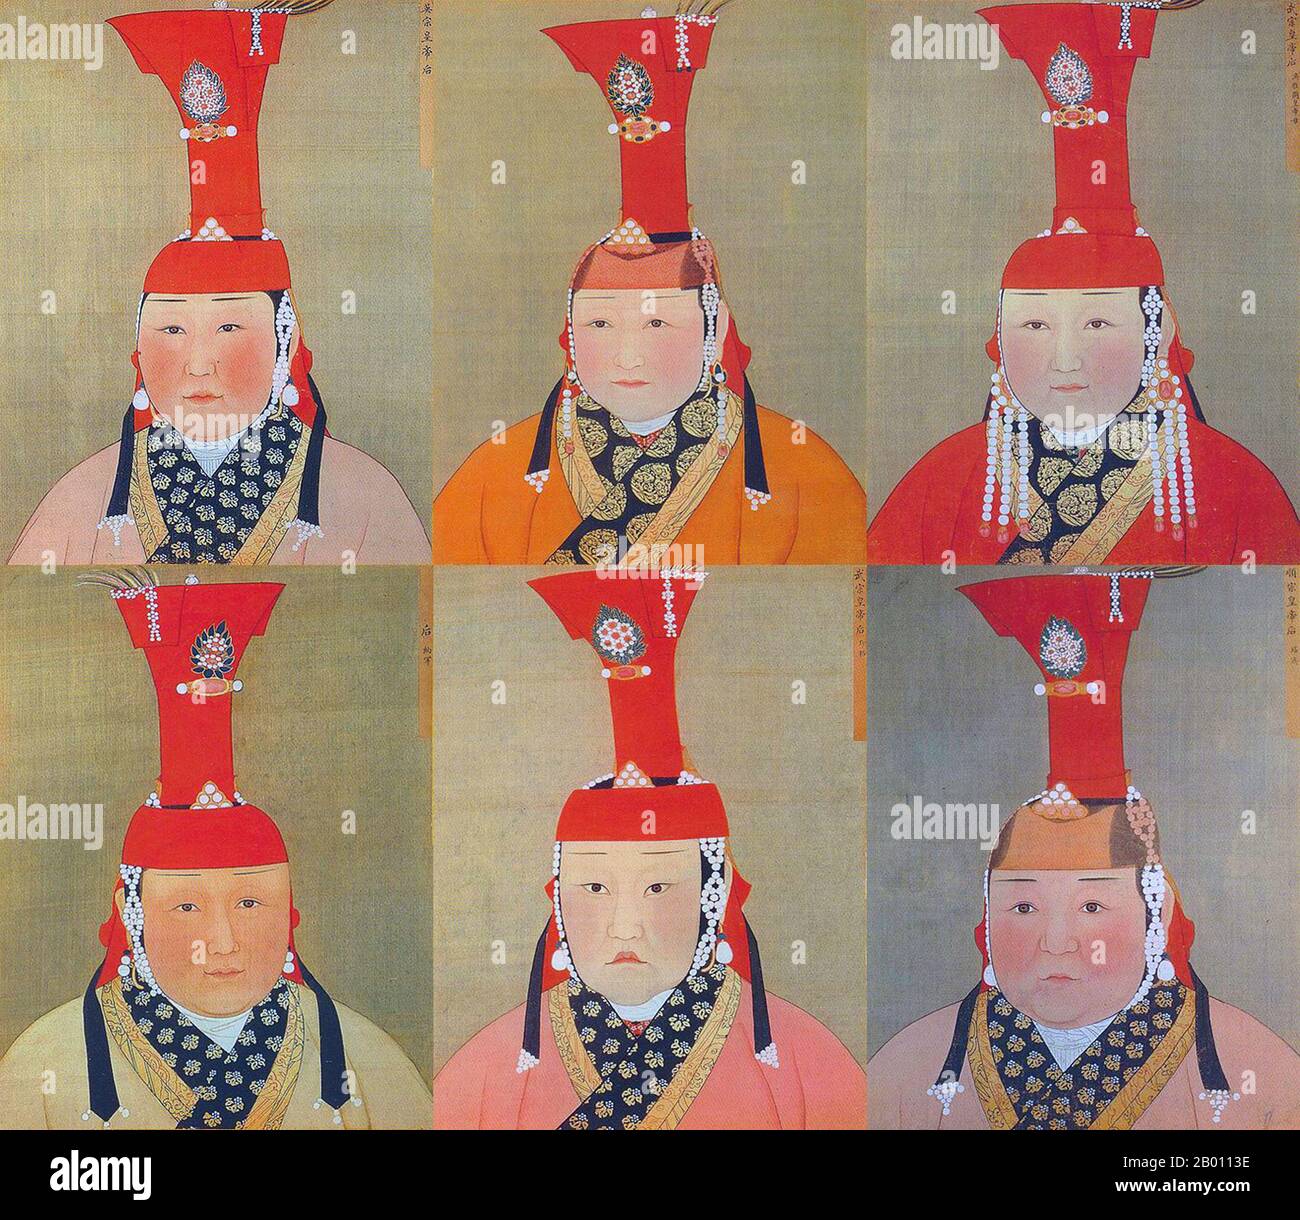 Mongolia/Cina: Un collage di sei imperatrici mongole dell'Impero della Grande Dinastia Khan/Yuan (XII-XIV secolo). Pittura e inchiostro su ritratti album di seta, 14 ° secolo. Khatun (Persiano; Turco: Hatun) è un titolo femminile di nobiltà ed equivalente al maschio 'khan' usato prominentemente nel primo Impero Turco e nel successivo Impero Mongolo. Equivale a regina o imperatrice. Foto Stock